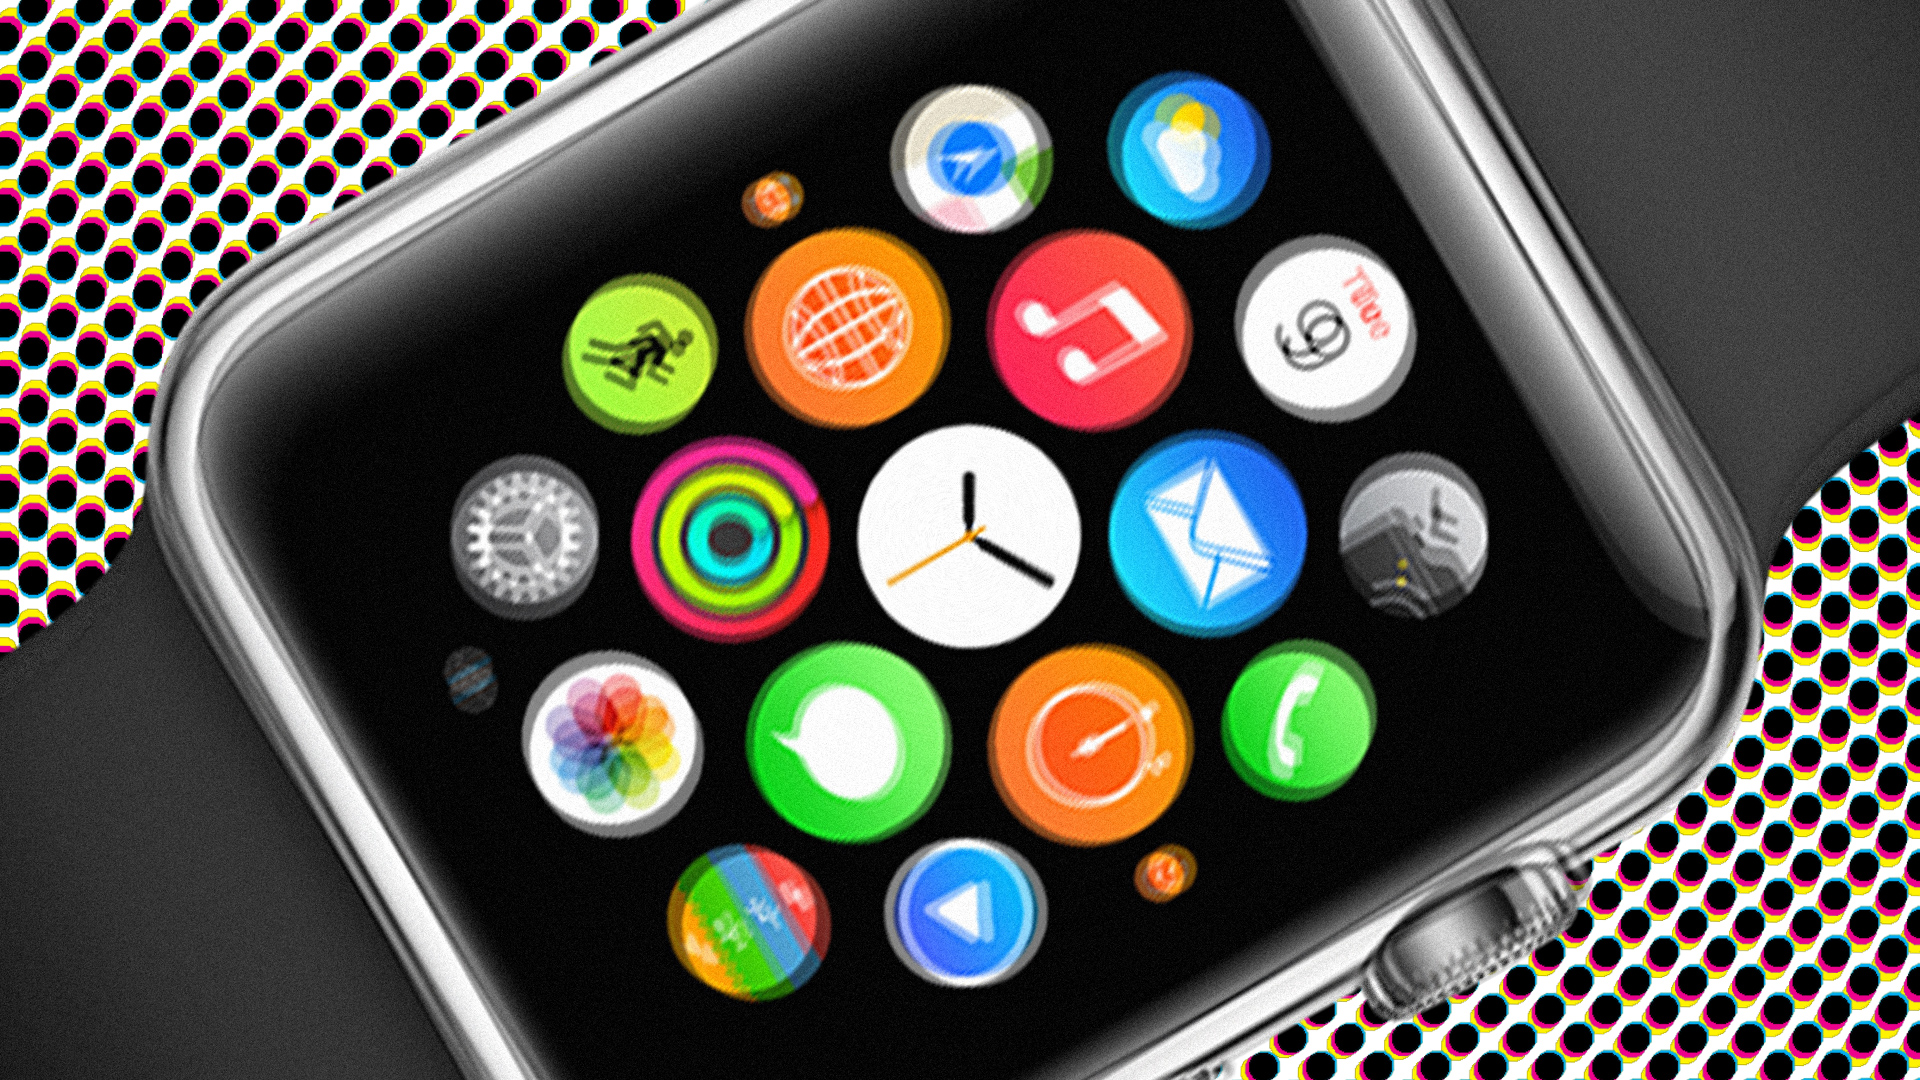 orologio apple wallpaper hd,aggeggio,smartphone,tecnologia,dispositivo di comunicazione,dispositivo di comunicazione portatile